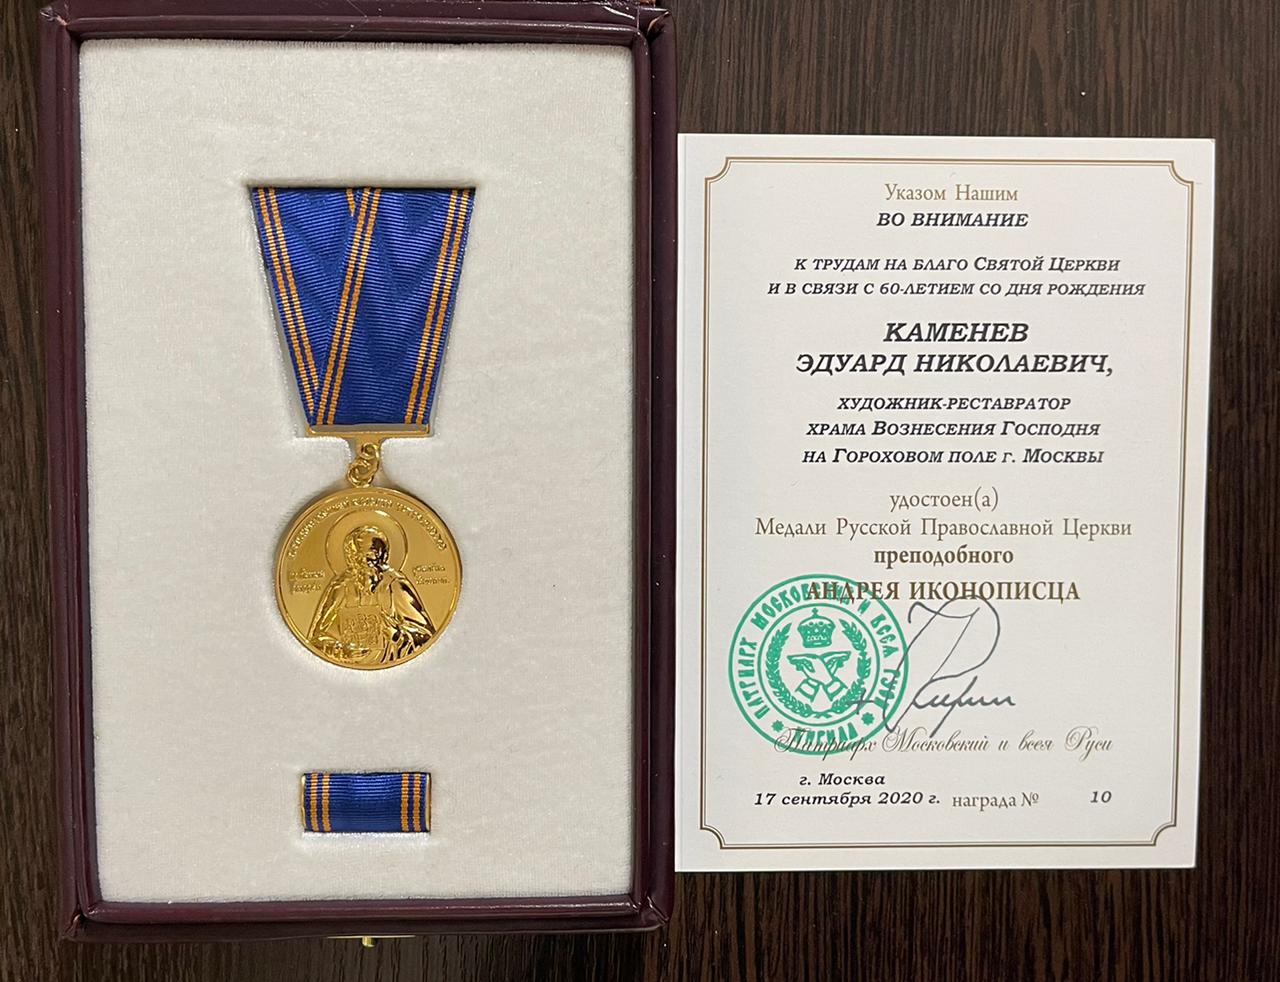 Награждение члена ревизионной комиссии нашего храма Каменева Уара (Эдуарда) Николаевича